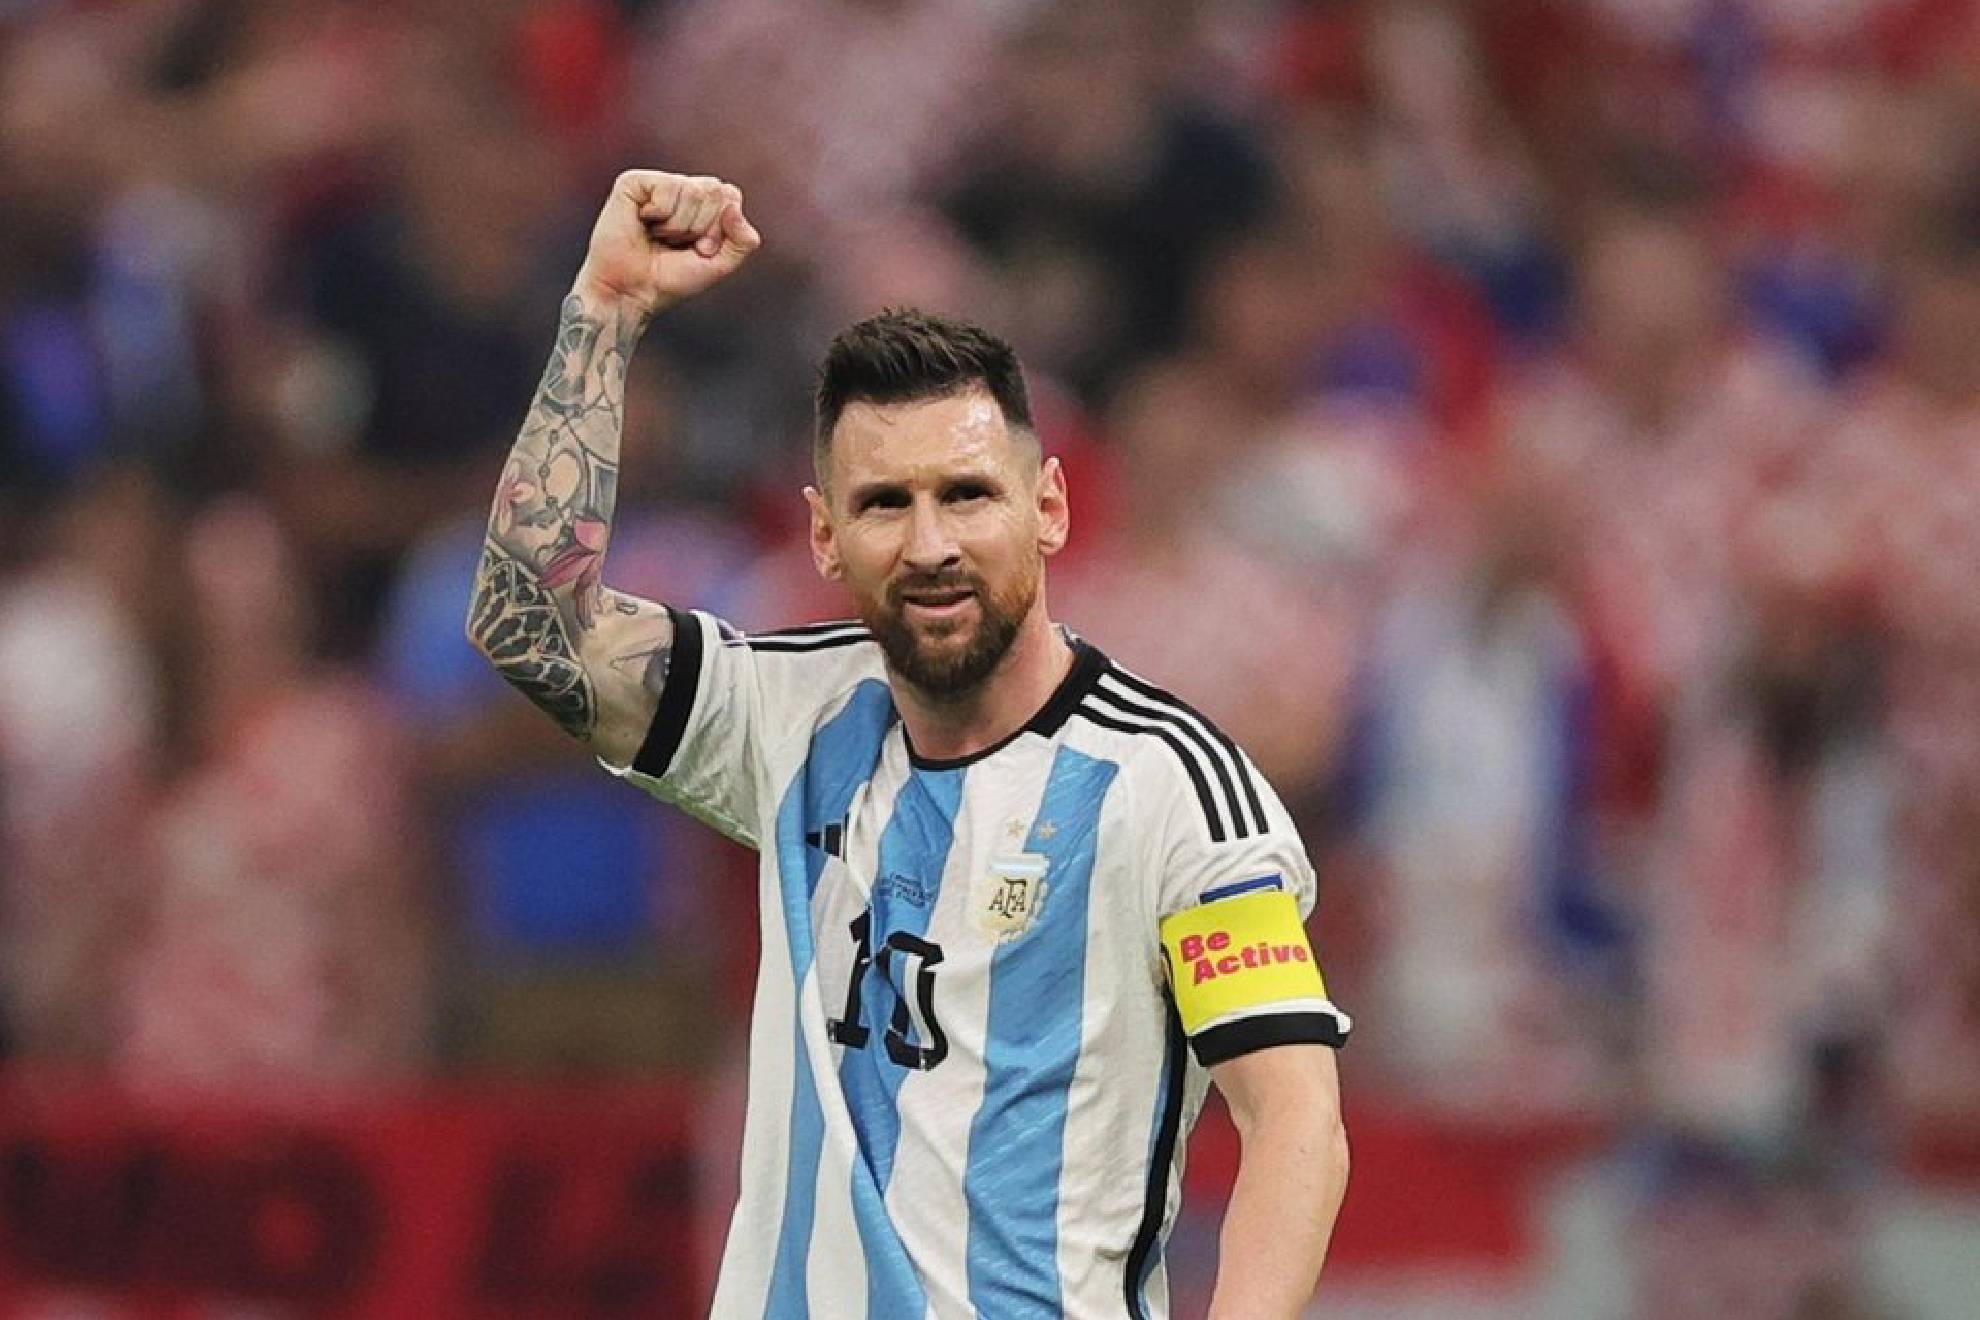 El capitán de Argentina celebró 800 goles en su carrera.